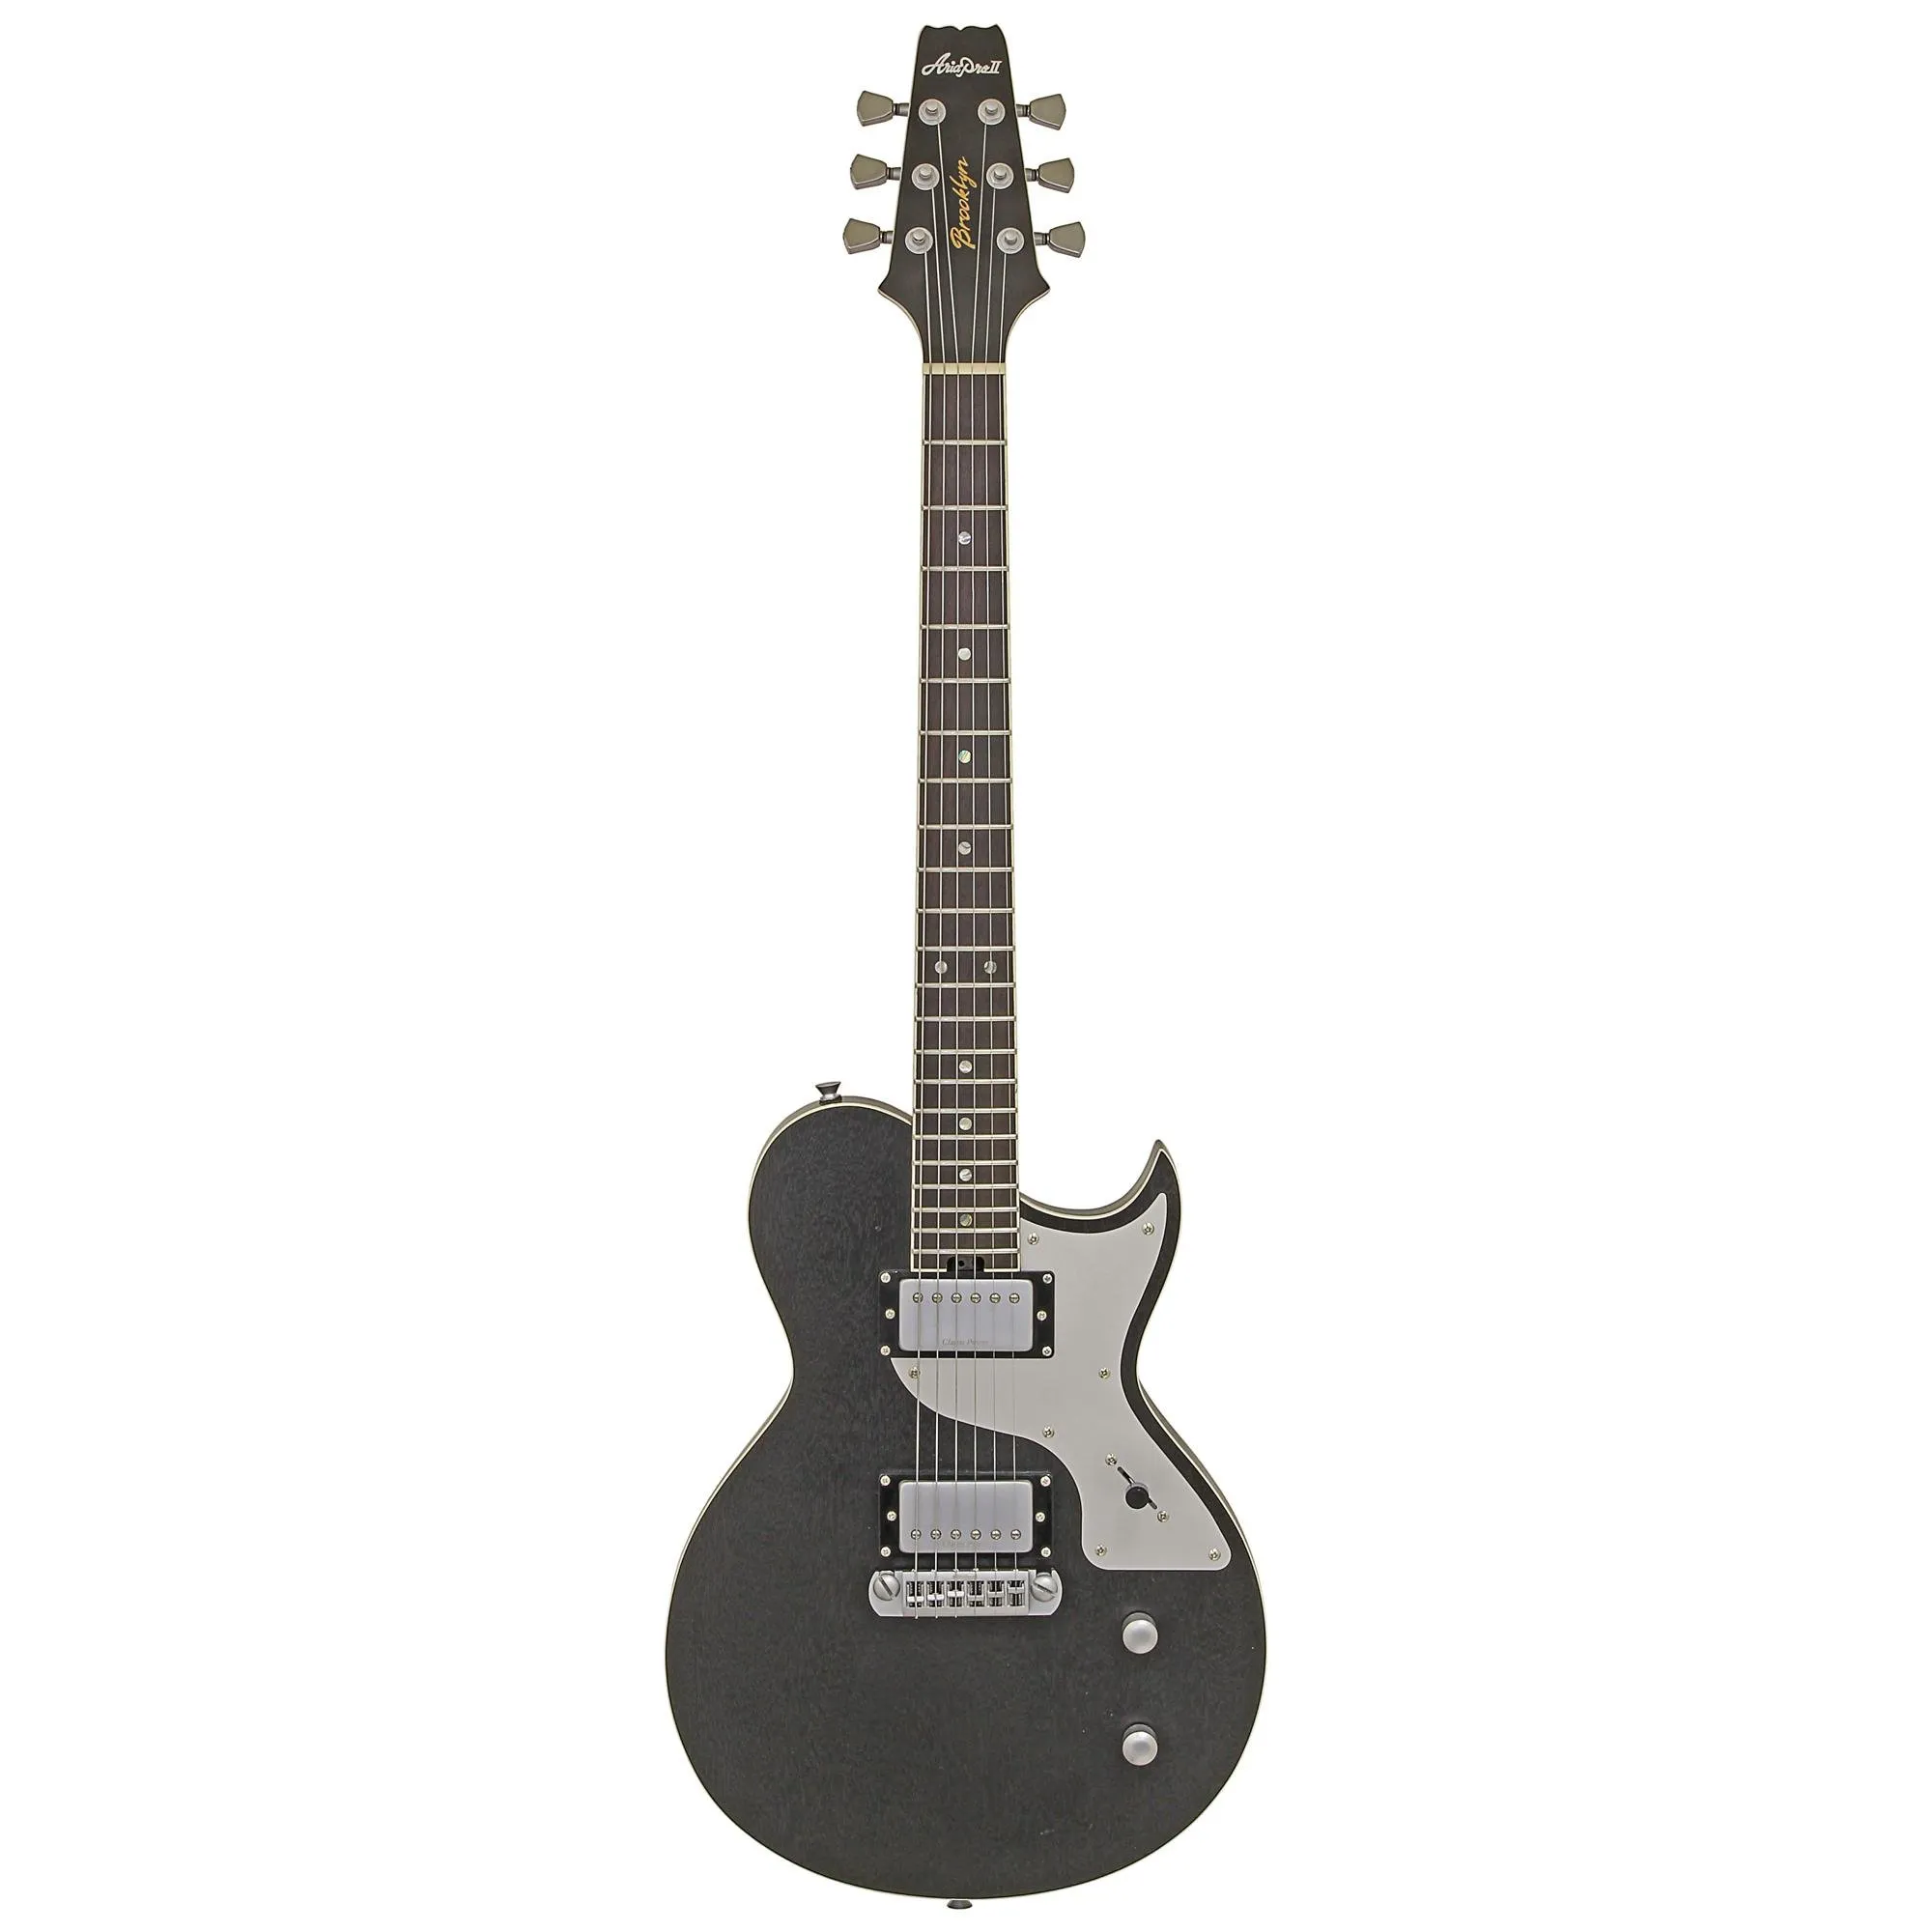 Guitarra Aria Pro II 718-MK2 Brooklyn Open Pore Black por 3.999,99 à vista no boleto/pix ou parcele em até 12x sem juros. Compre na loja Mundomax!